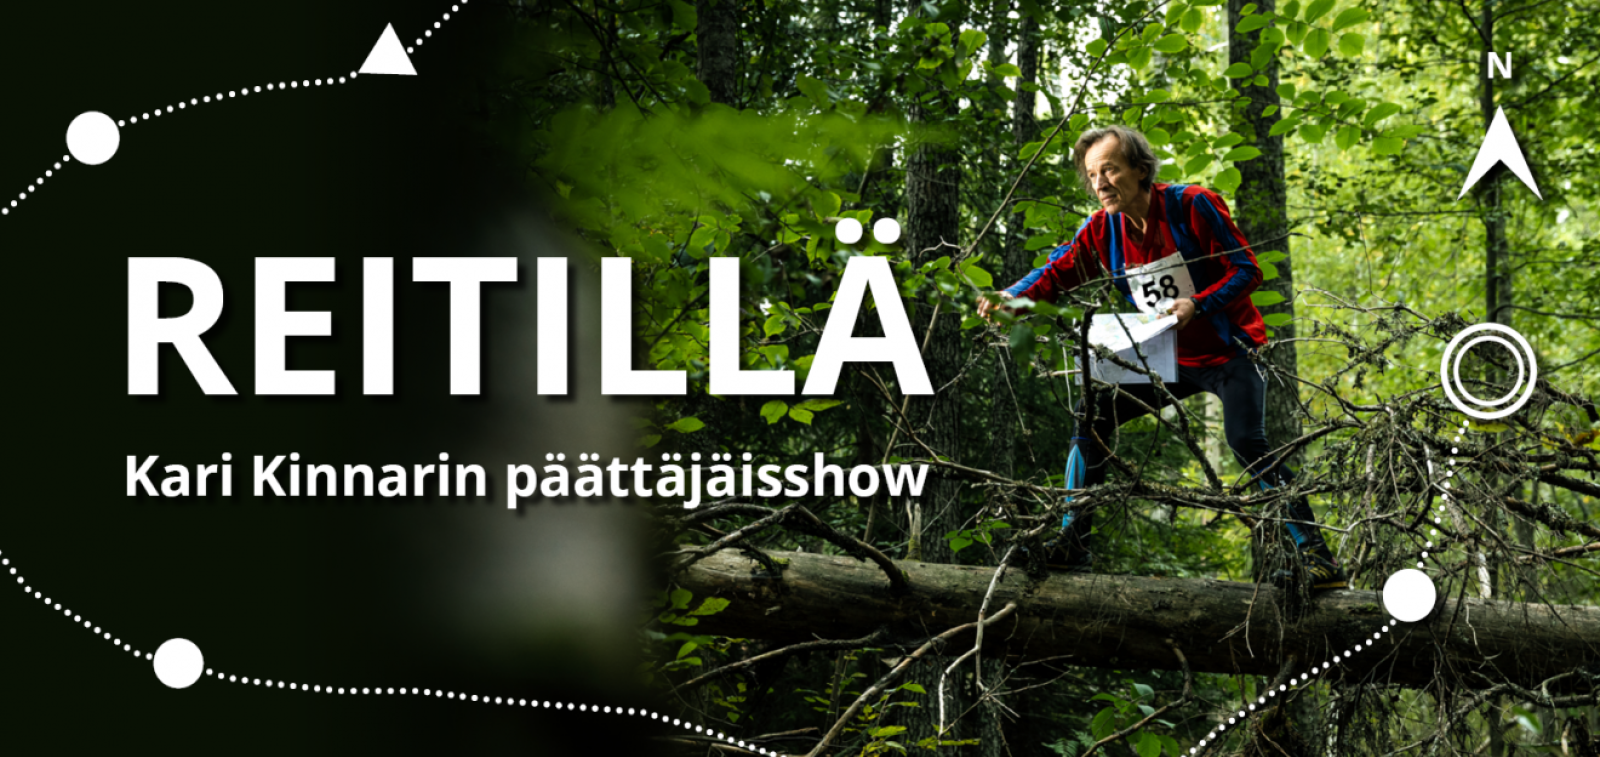 Reitillä - Kari Kinnarin päättäjäisshow